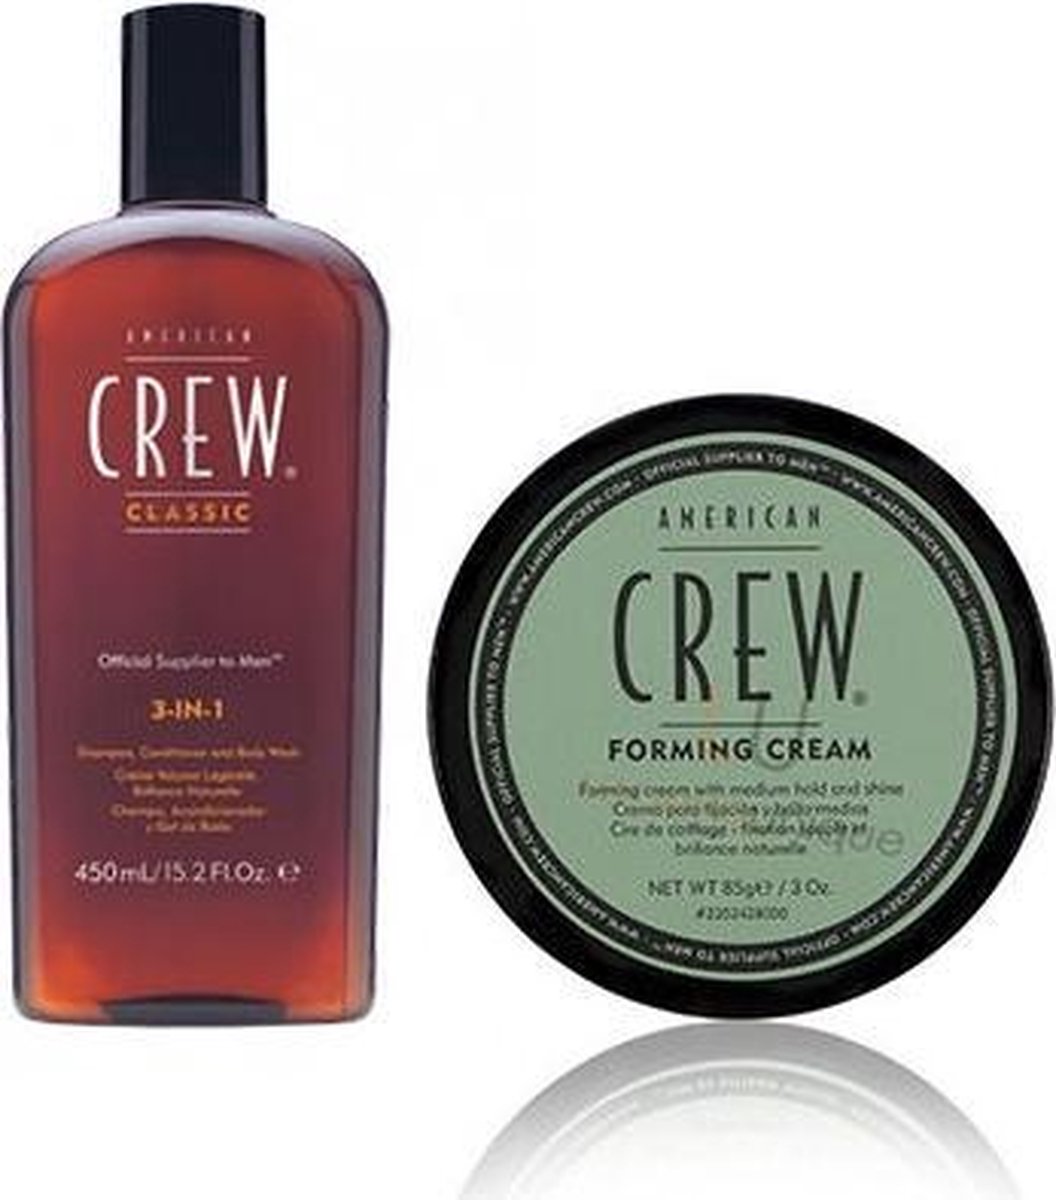 American Crew 3 in 1 shampoo 450 en forming cream 85g